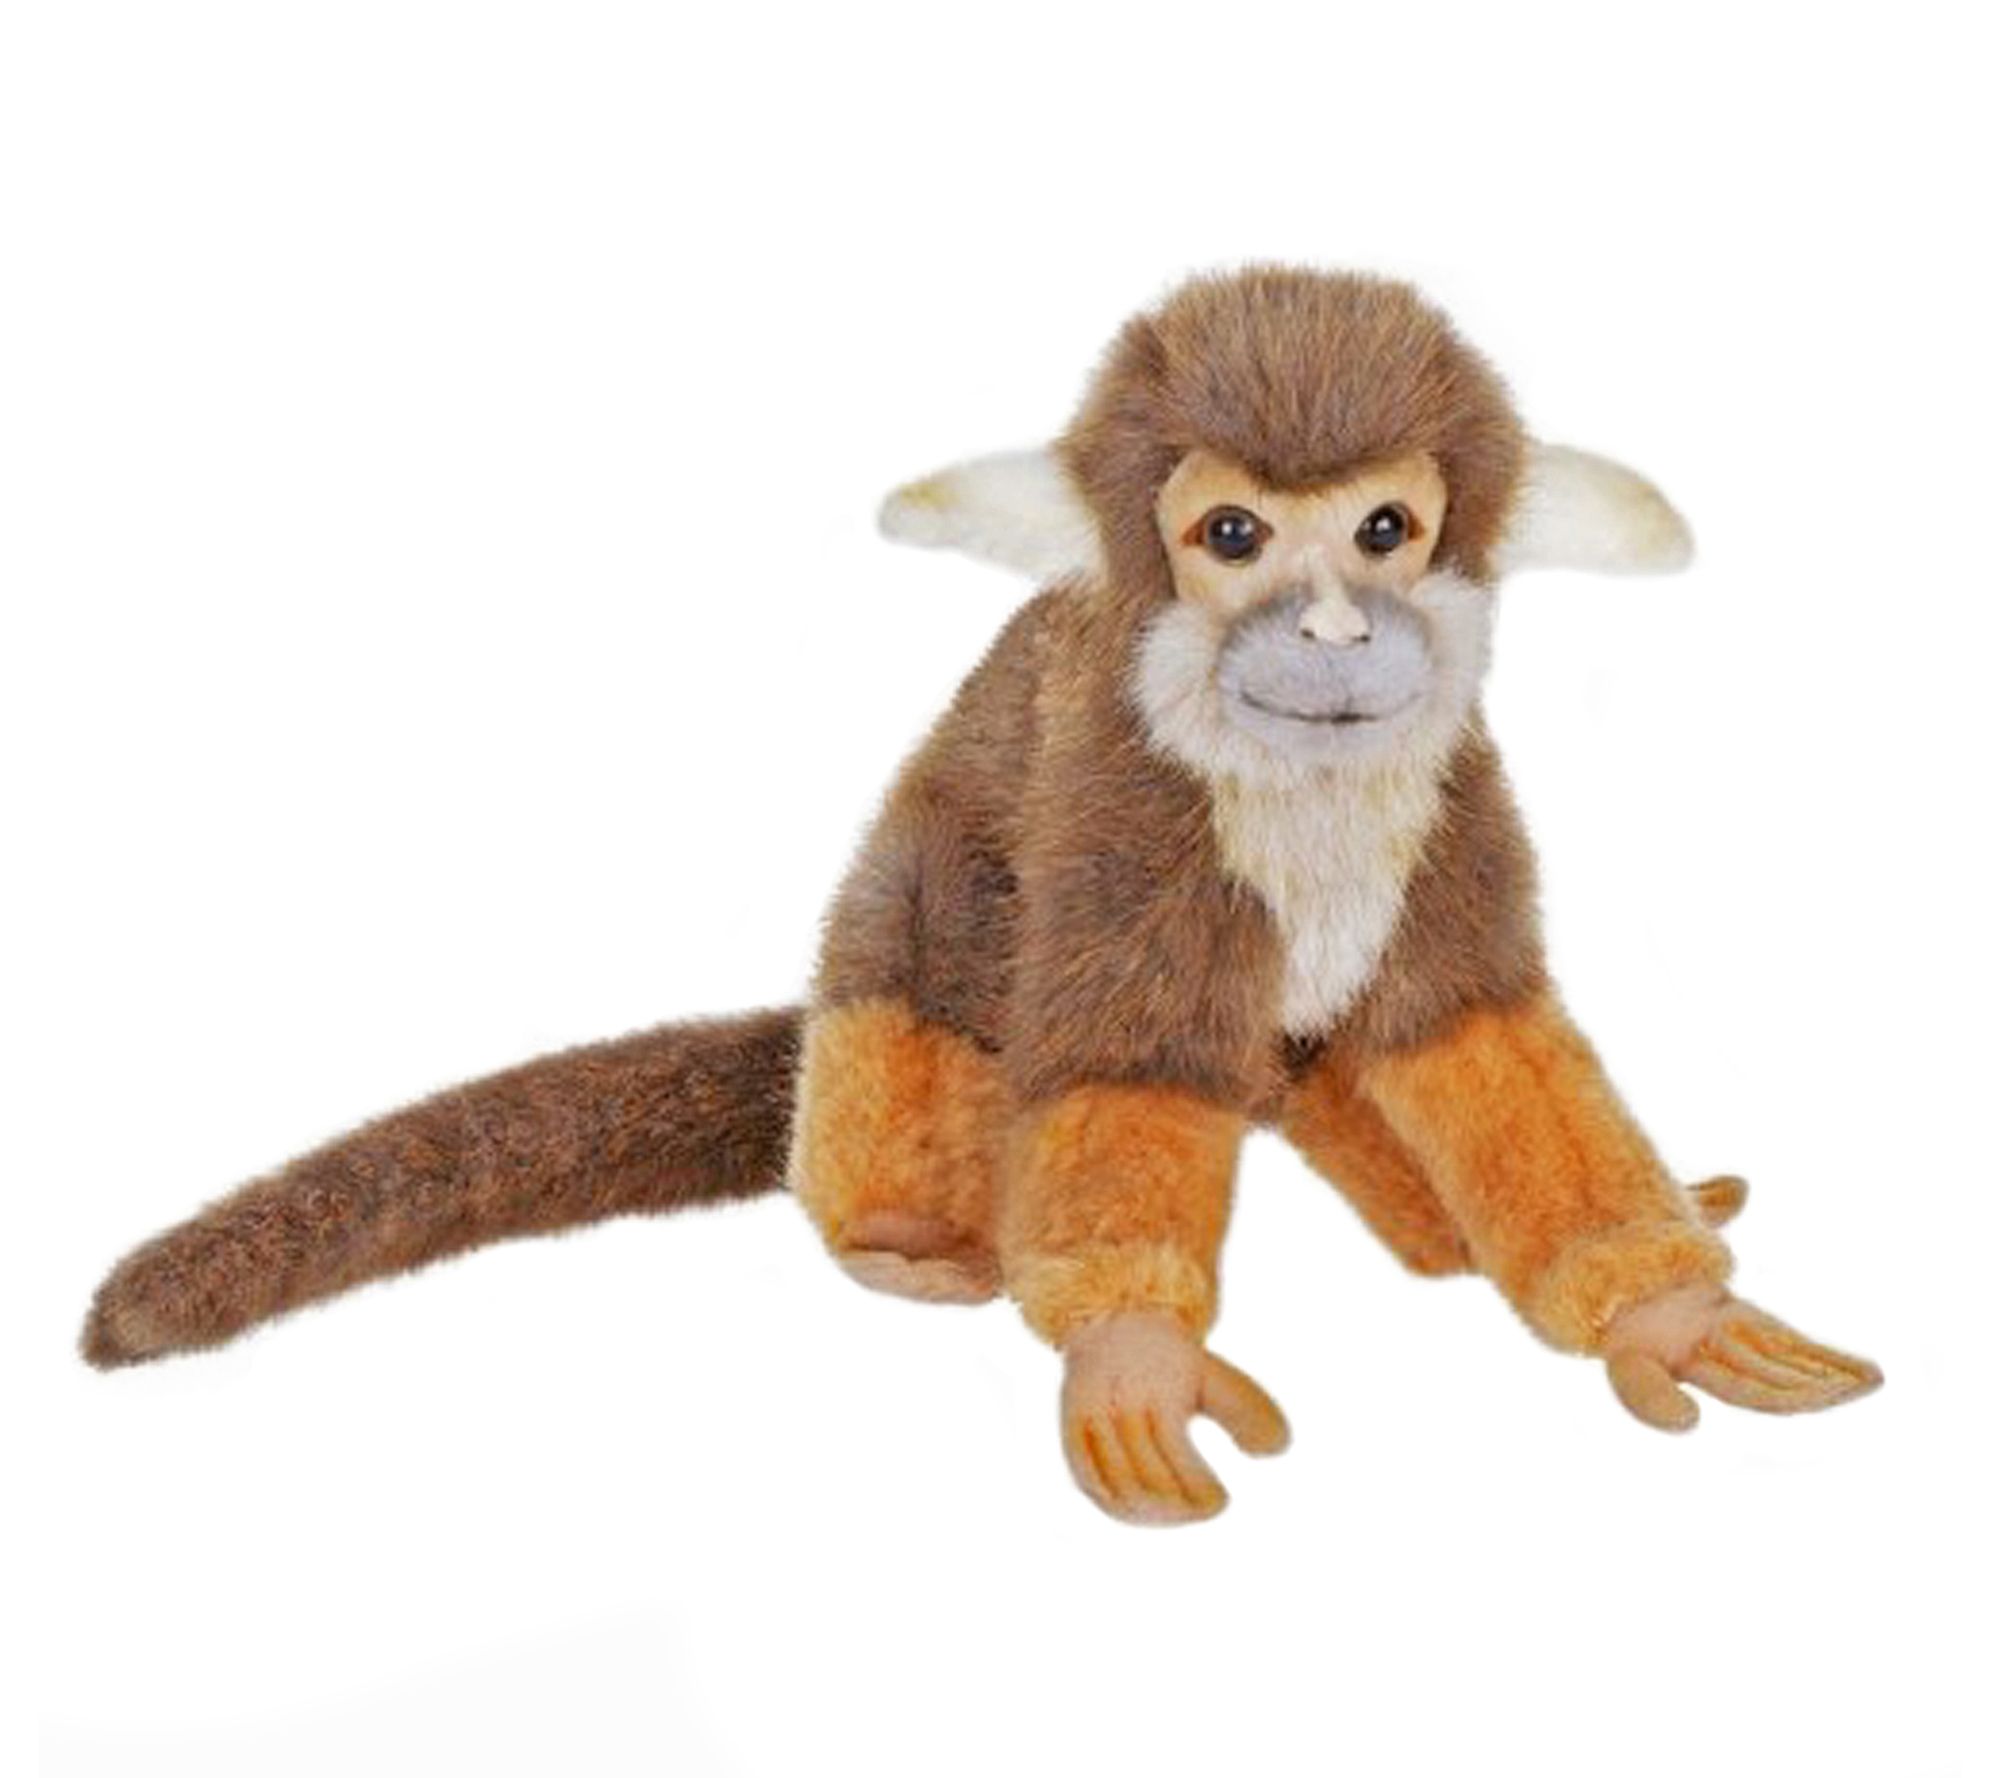 squirrel monkey stuffed animal